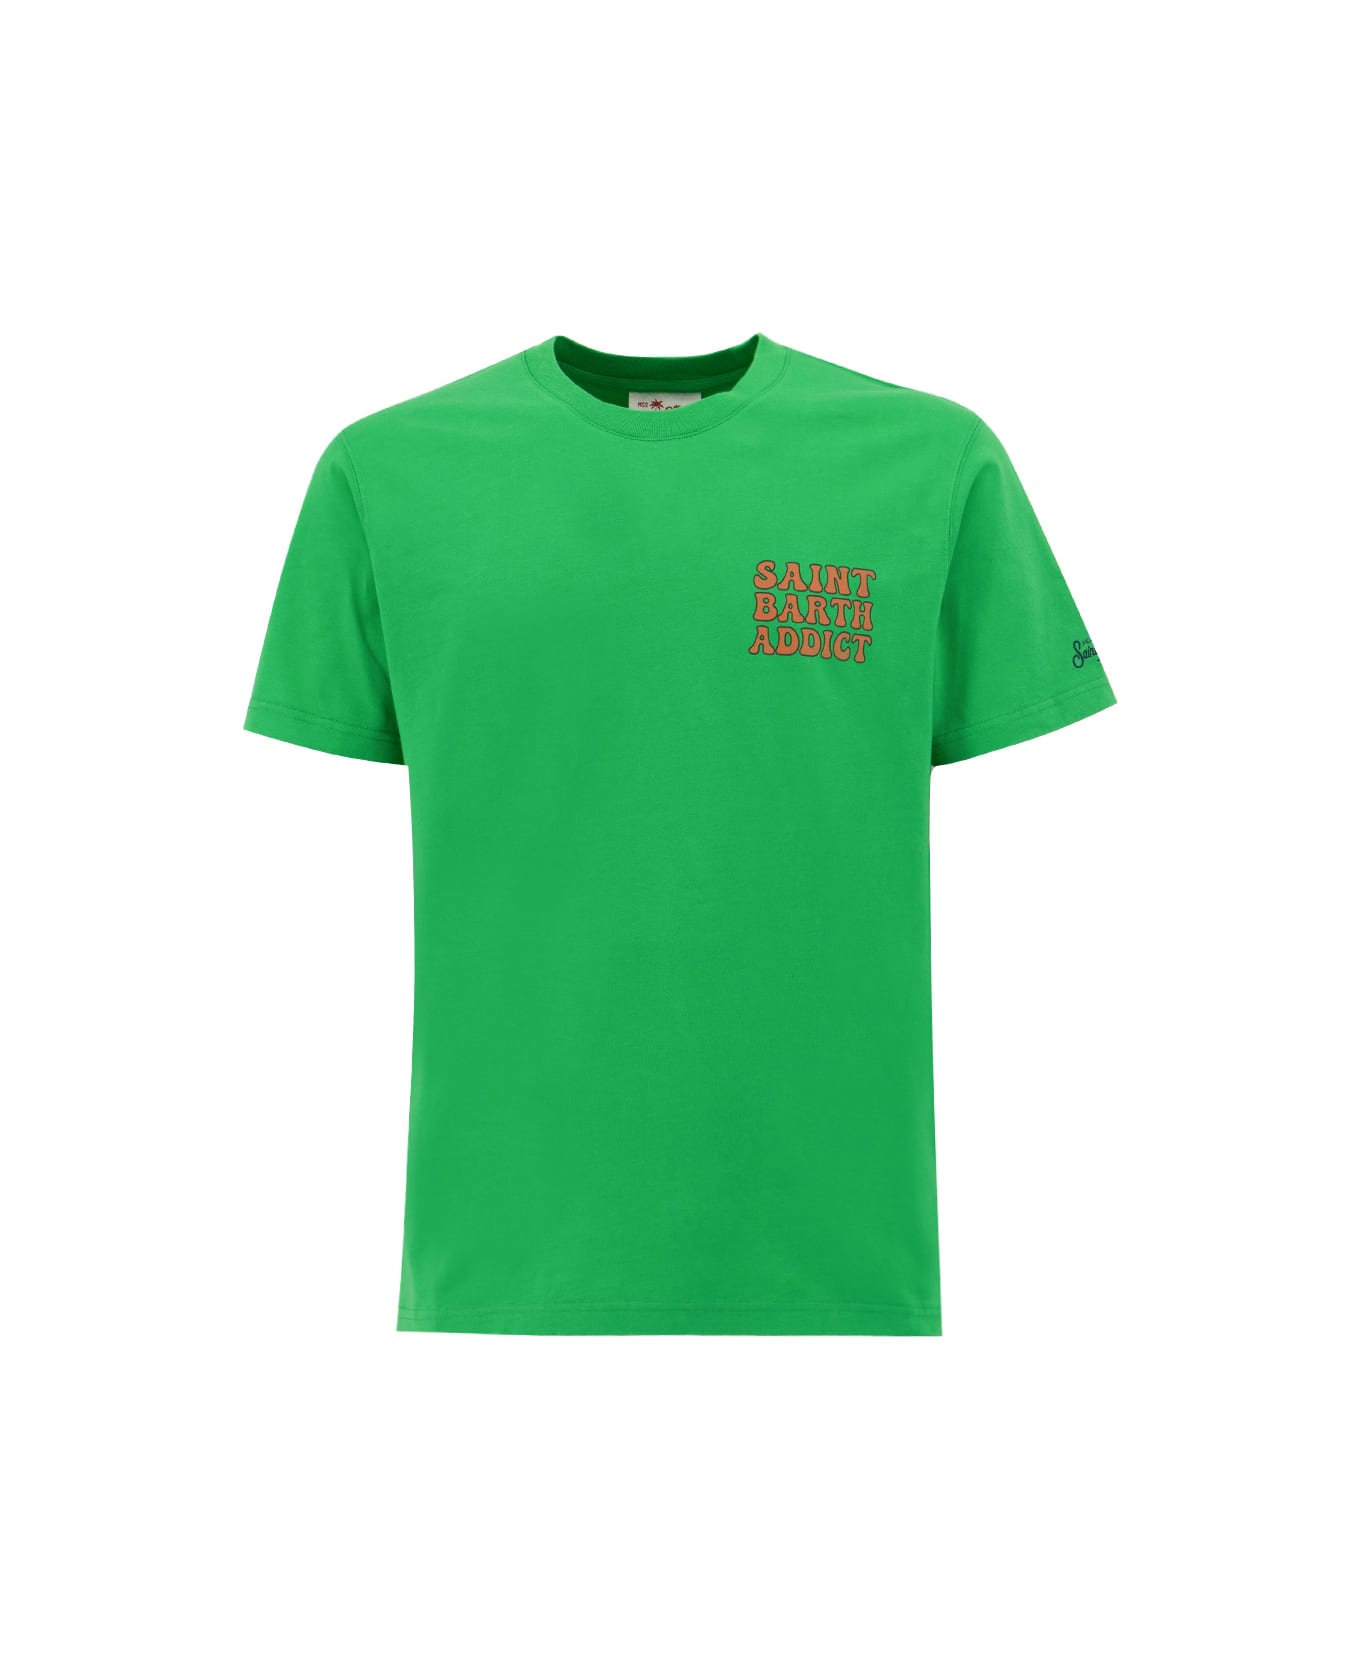 MC2 Saint Barth T-shirt - CUBA LIBRE RETRO 57